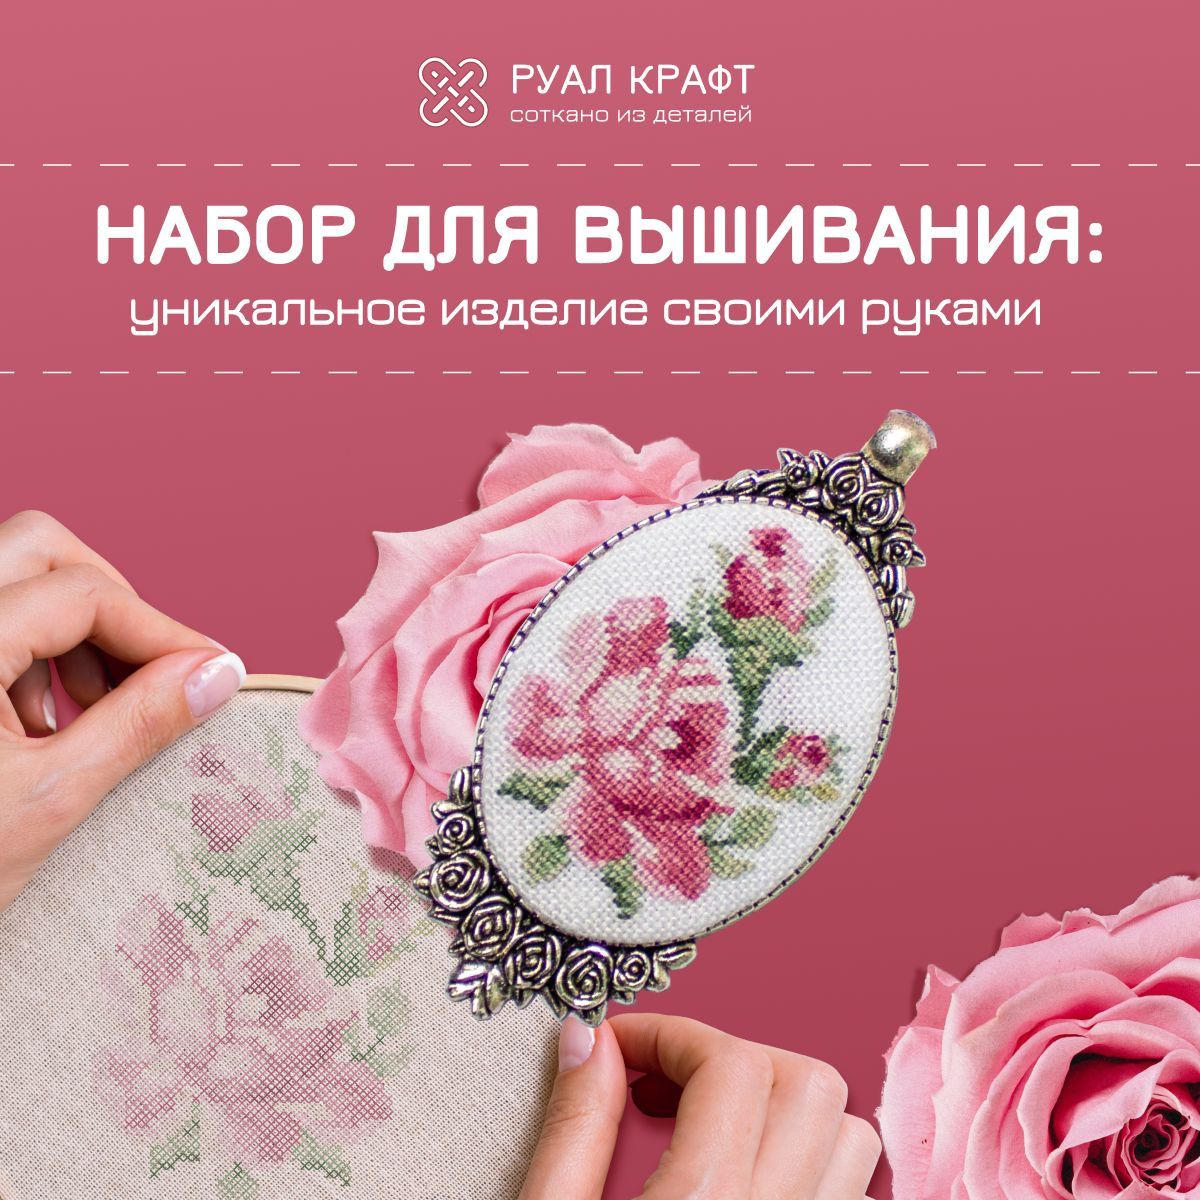 Новогодние наклейки и трафареты на окна купить в интернет-магазине paraskevat.ru